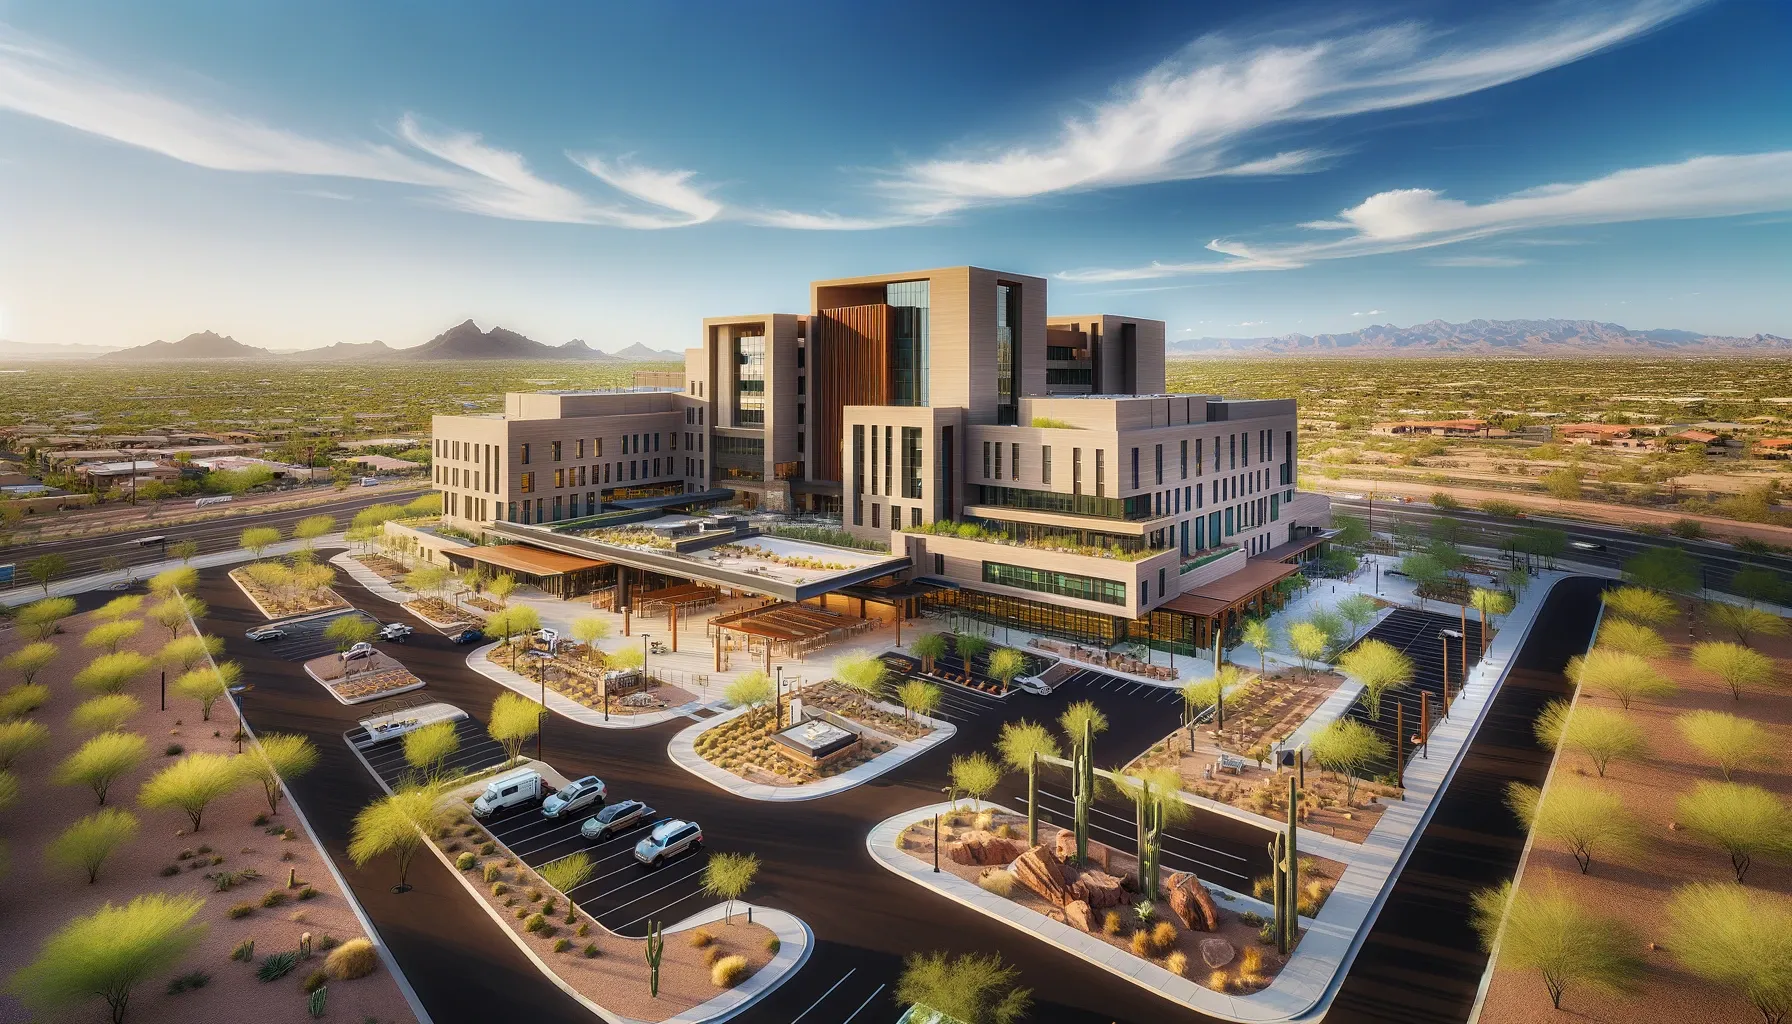 An imaginary hospital in Phoenix Arizona